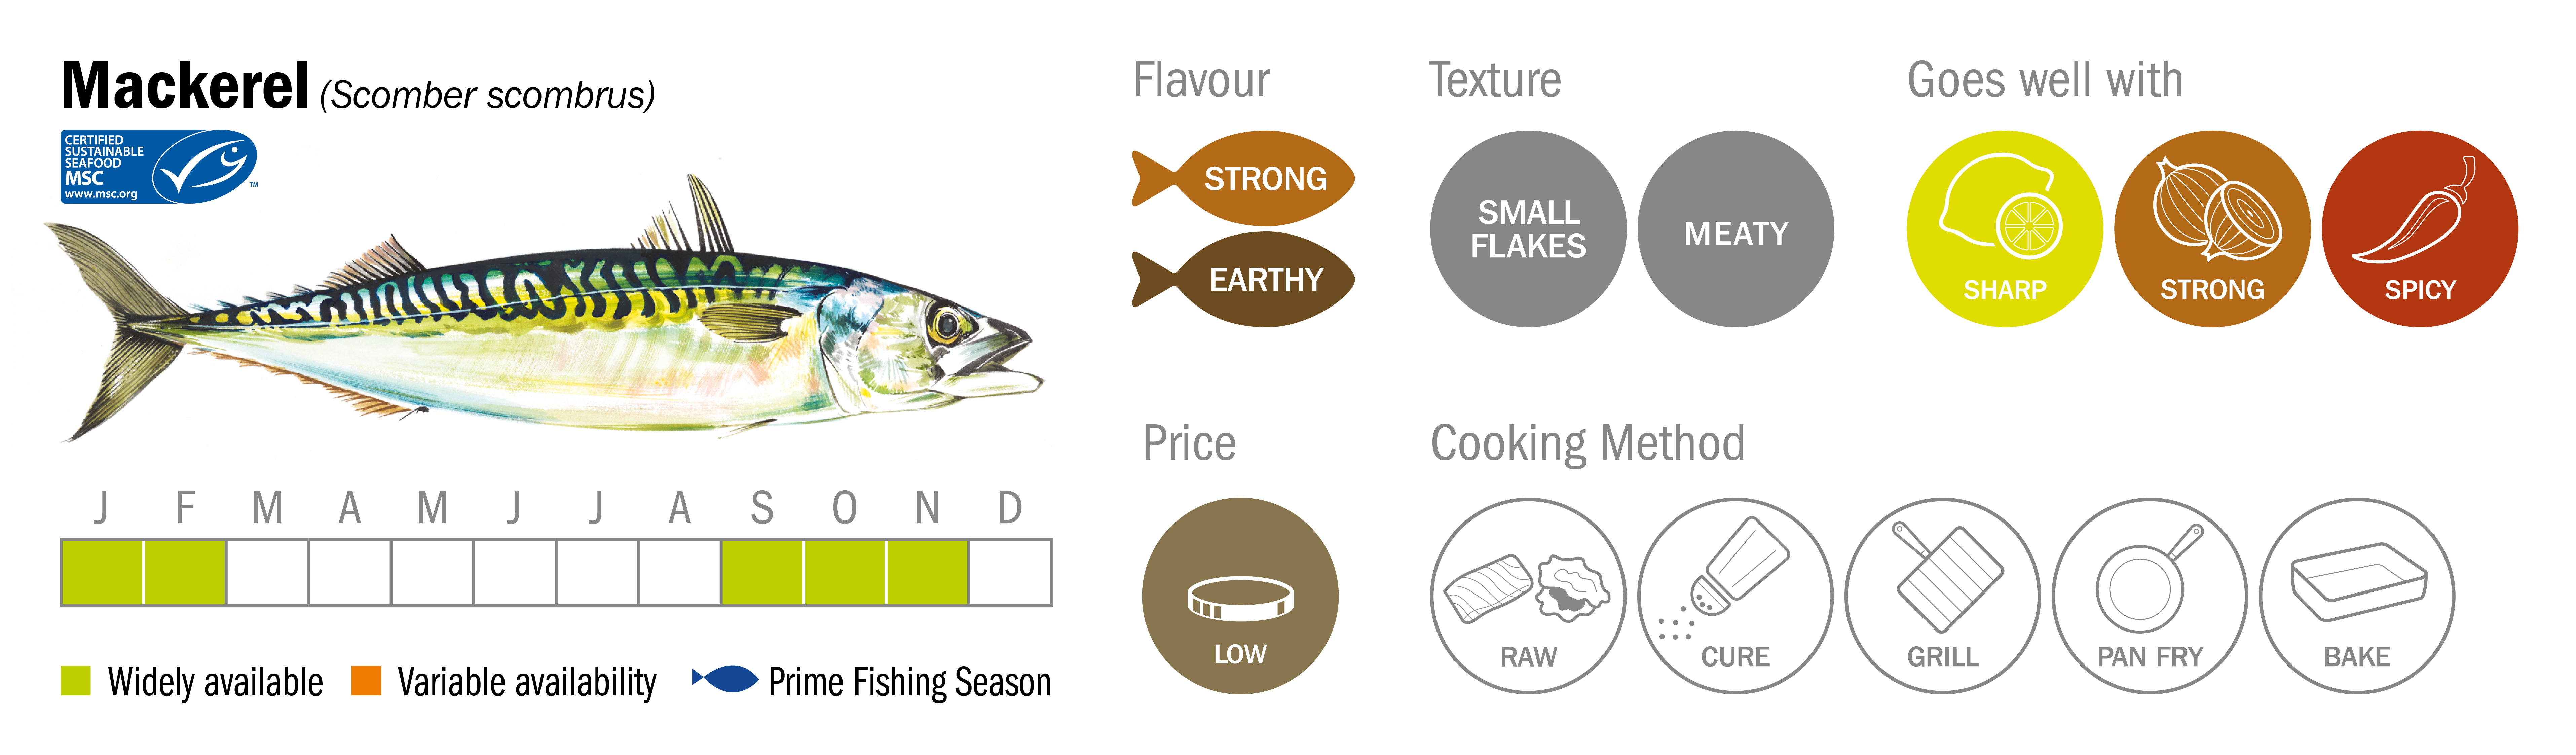 Mackerel Seafood Species Descriptor Graphic